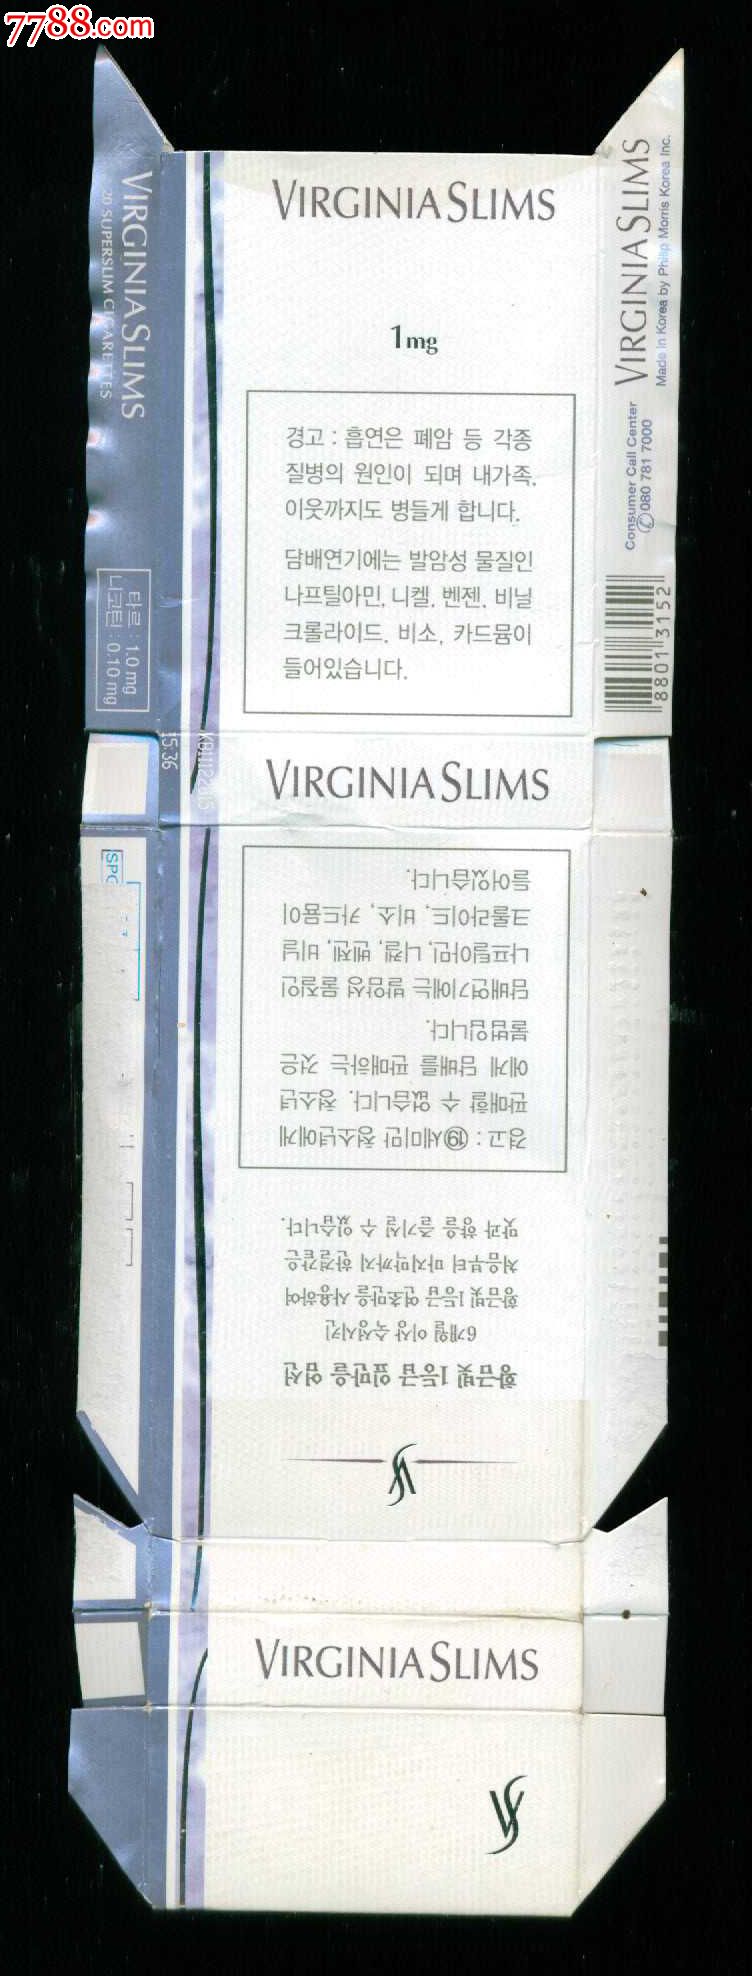 【外国烟盒】—virginiaslims弗吉尼亚丝(88013152)